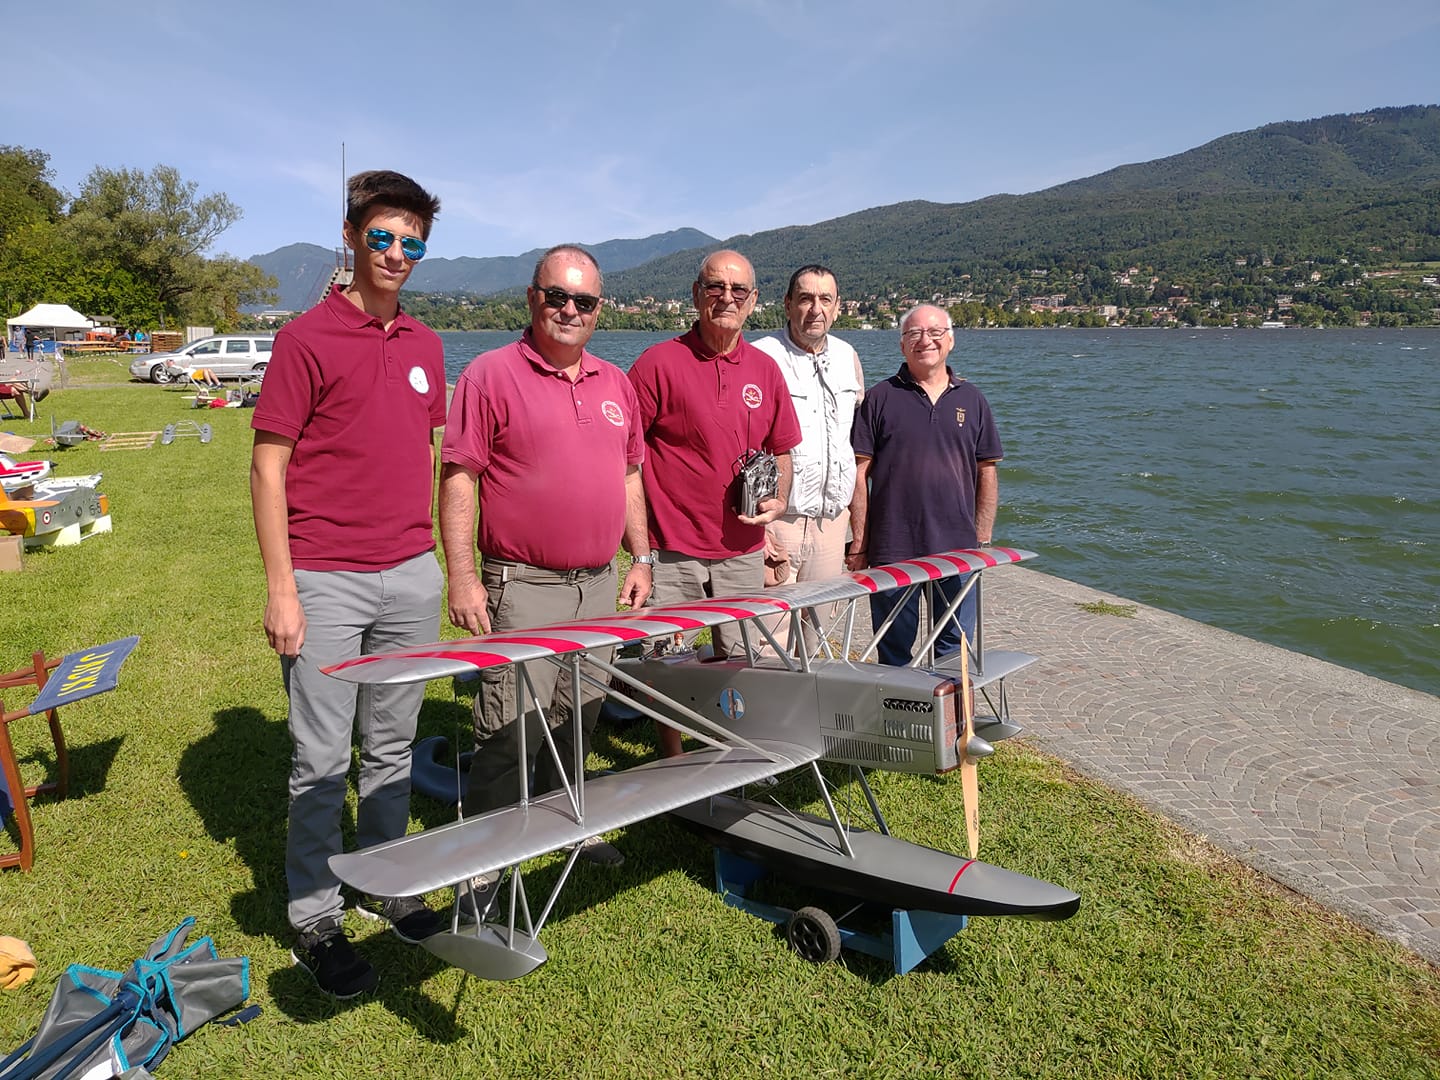 A Biandronno, agosto 2018: da sinistra, Alessandro Tacchi, Gabriele Tacchi, il Jacky, il Maestro Italo Magrotti "Magher" e Antonio Collini, amico di vecchia data.